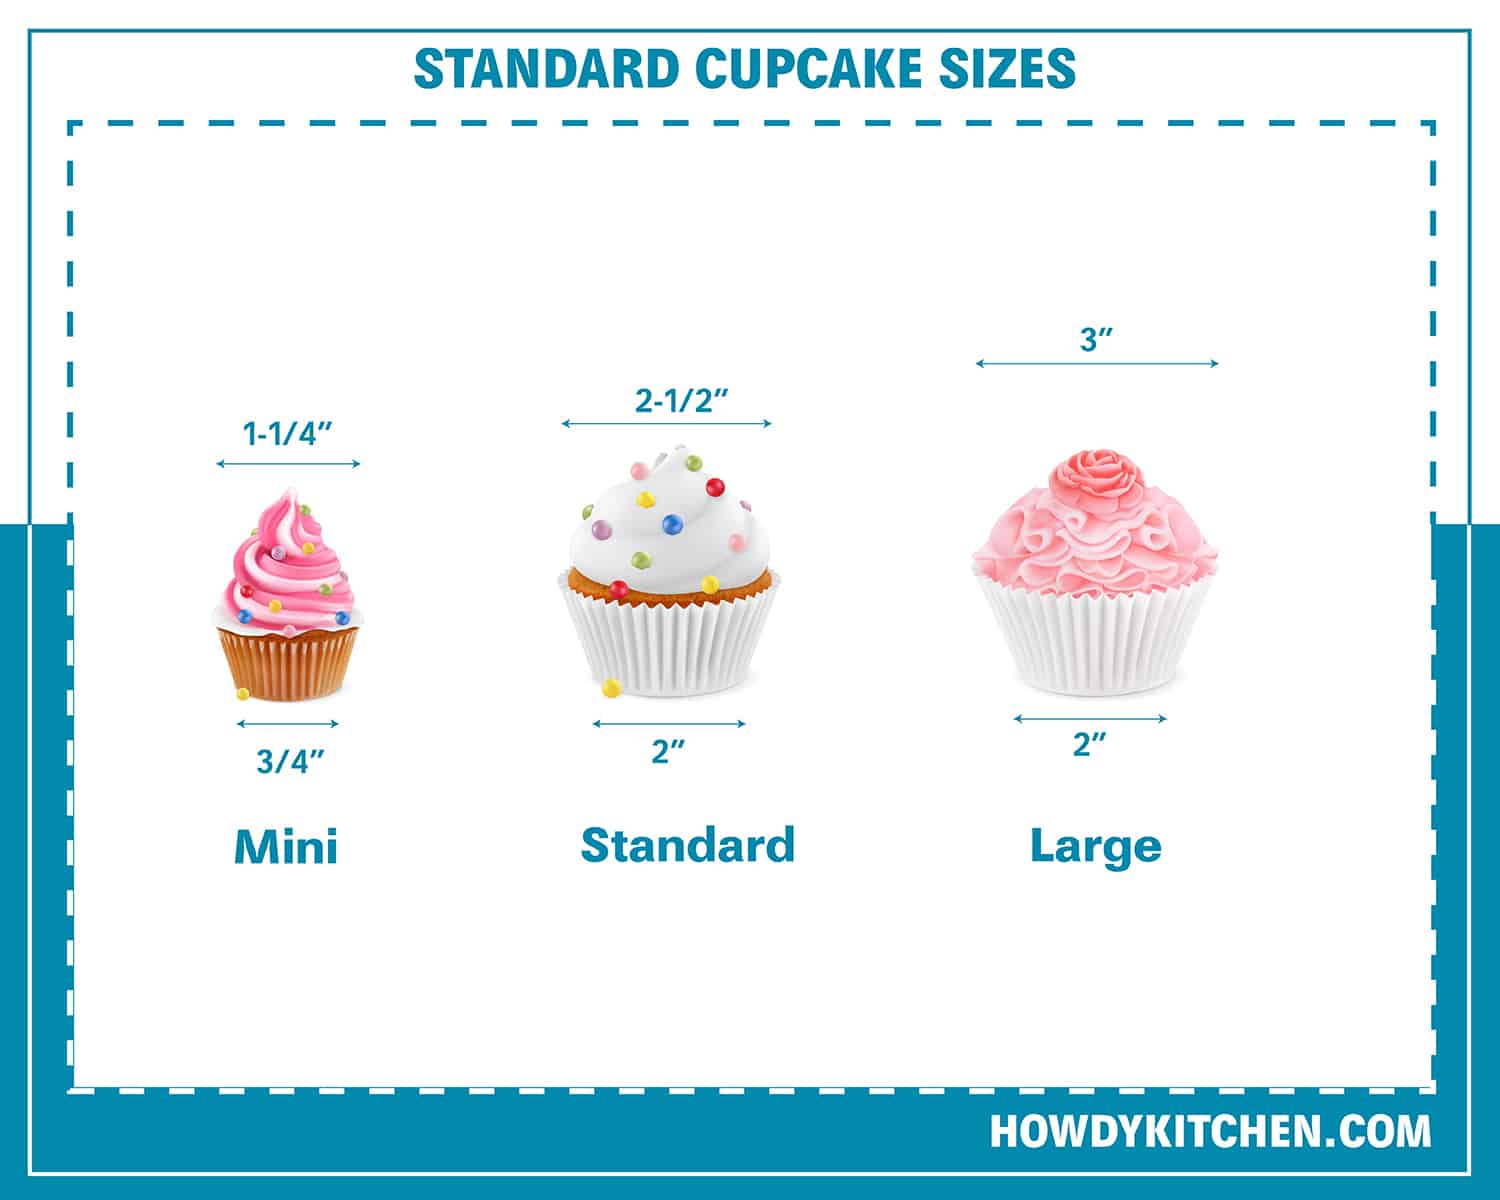 Standard Cupcake Sizes